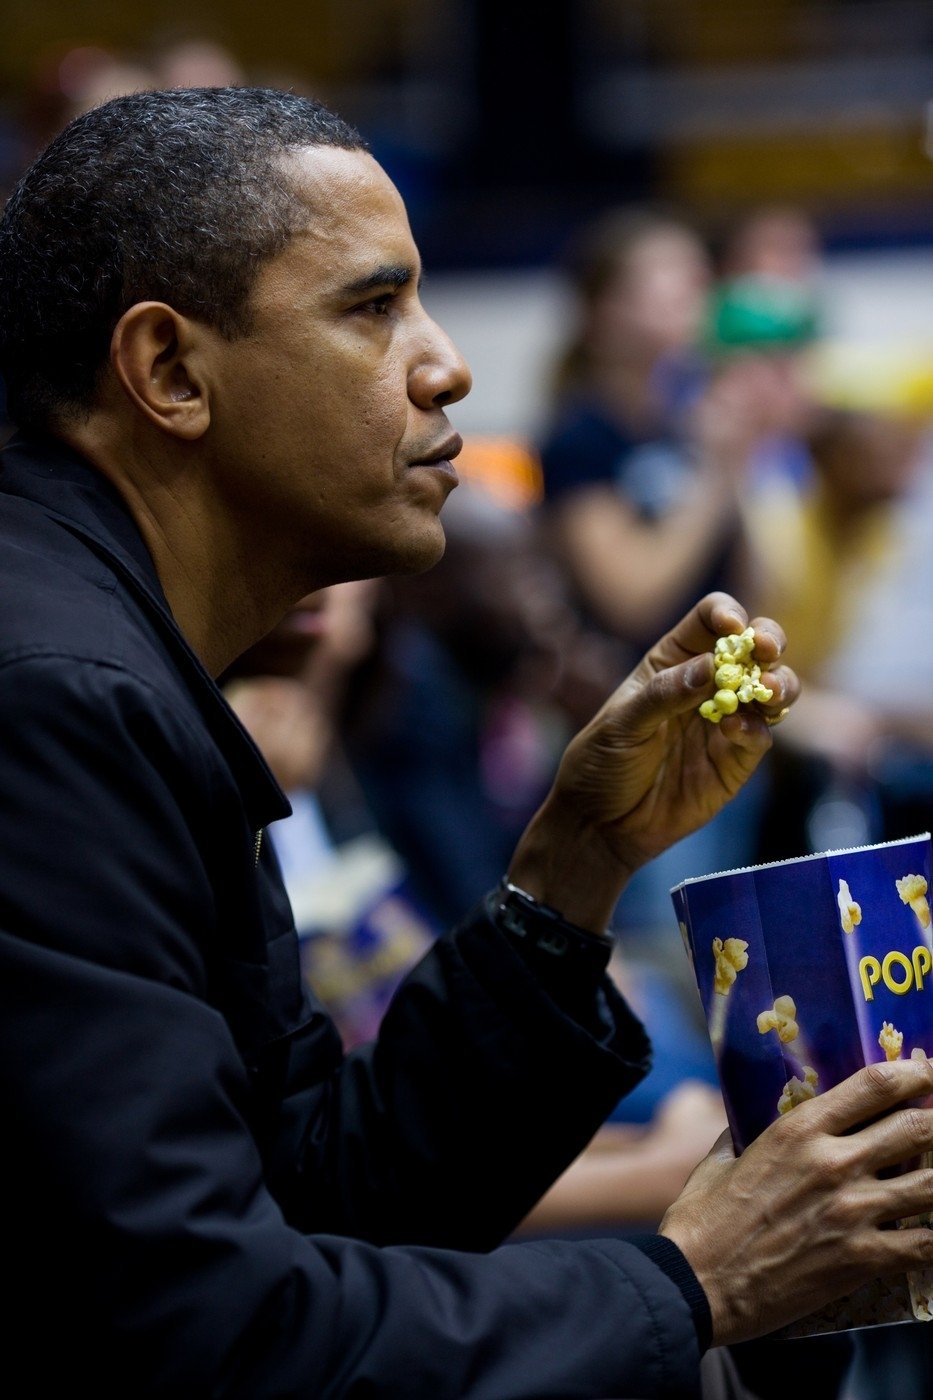 V USA zkrátka popcorn ke sportu patří, ví to i prezident Obama